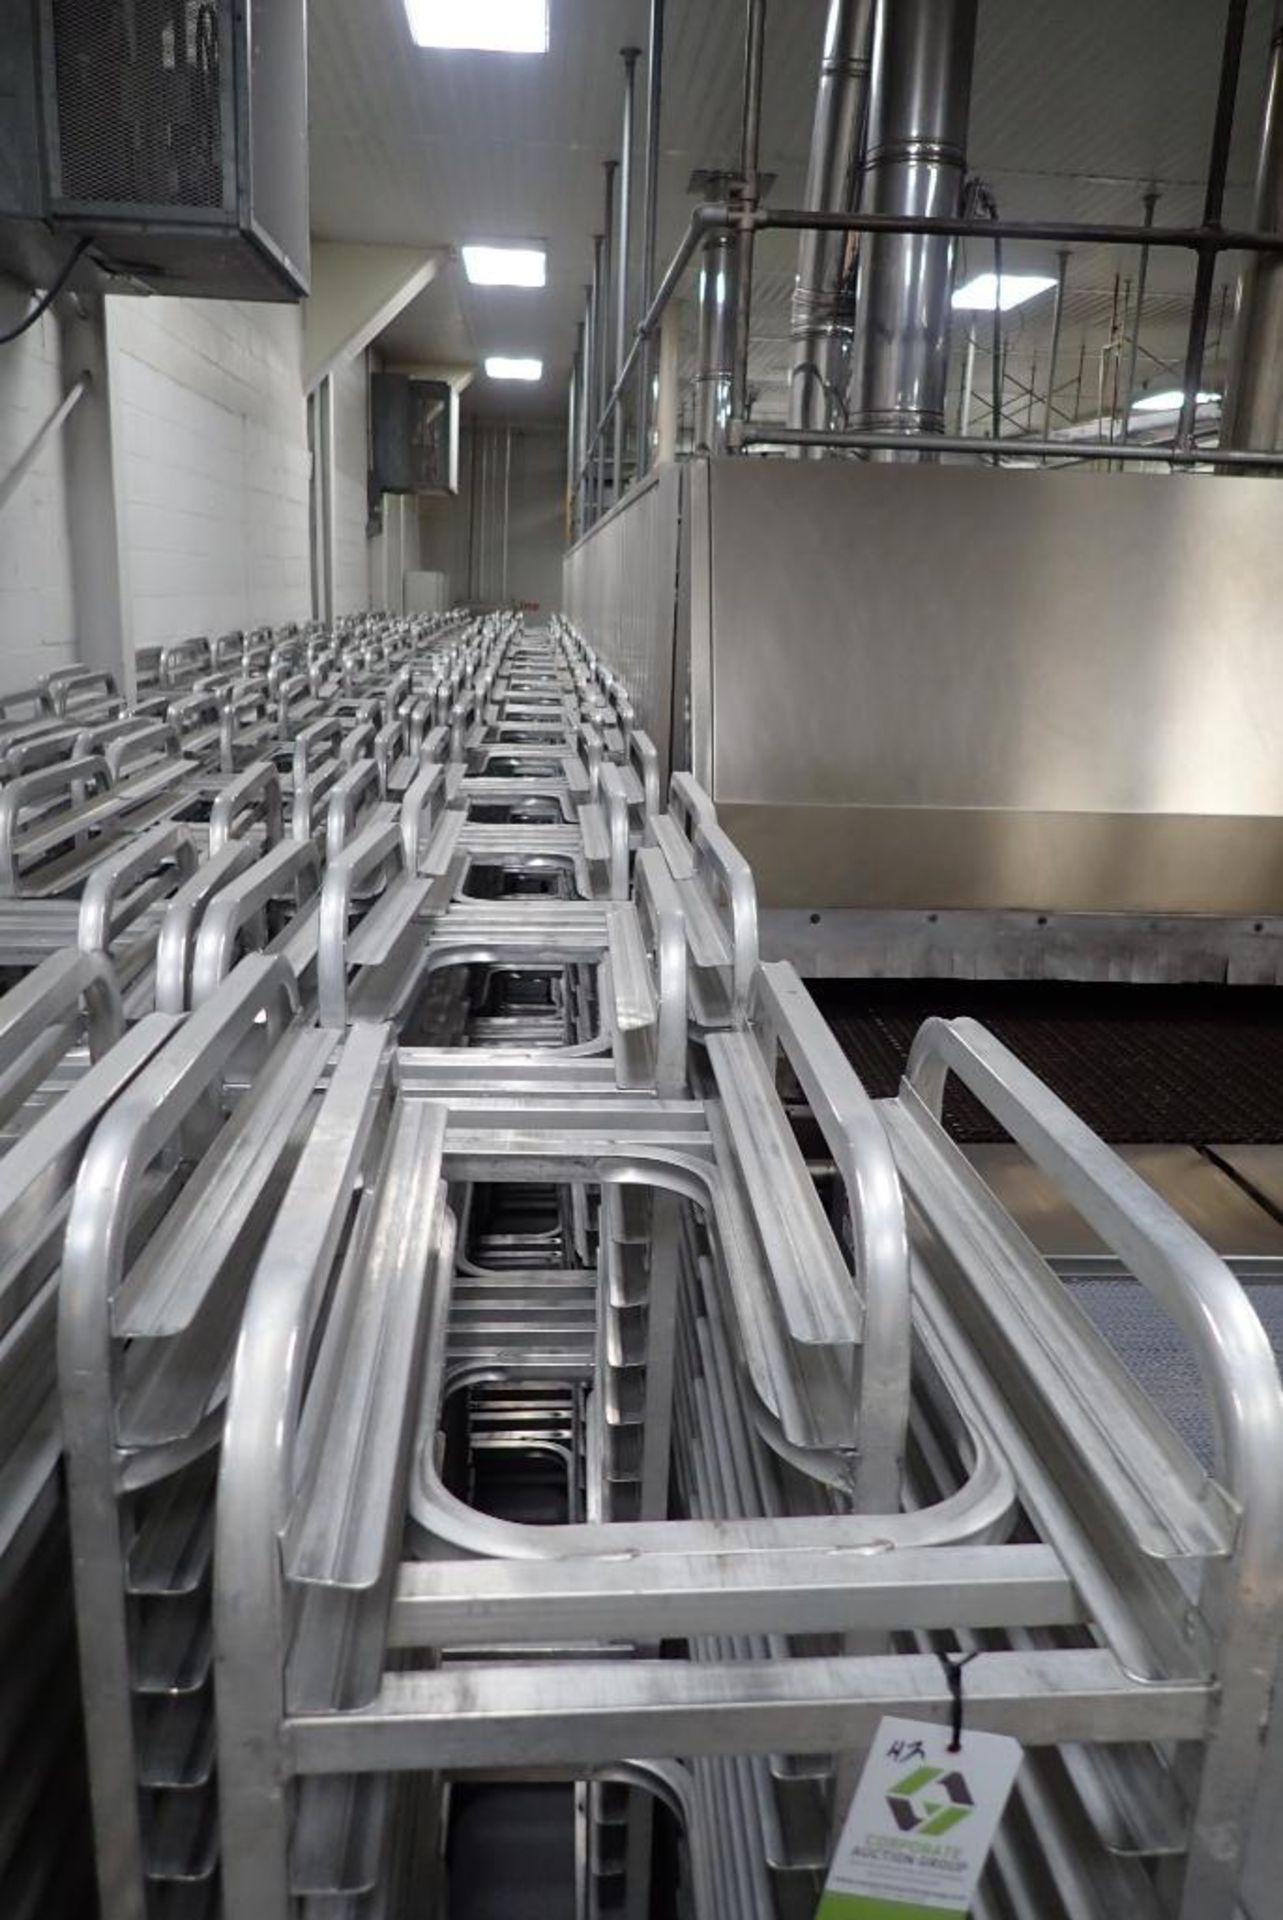 Aluminum bakery rack - Image 2 of 6